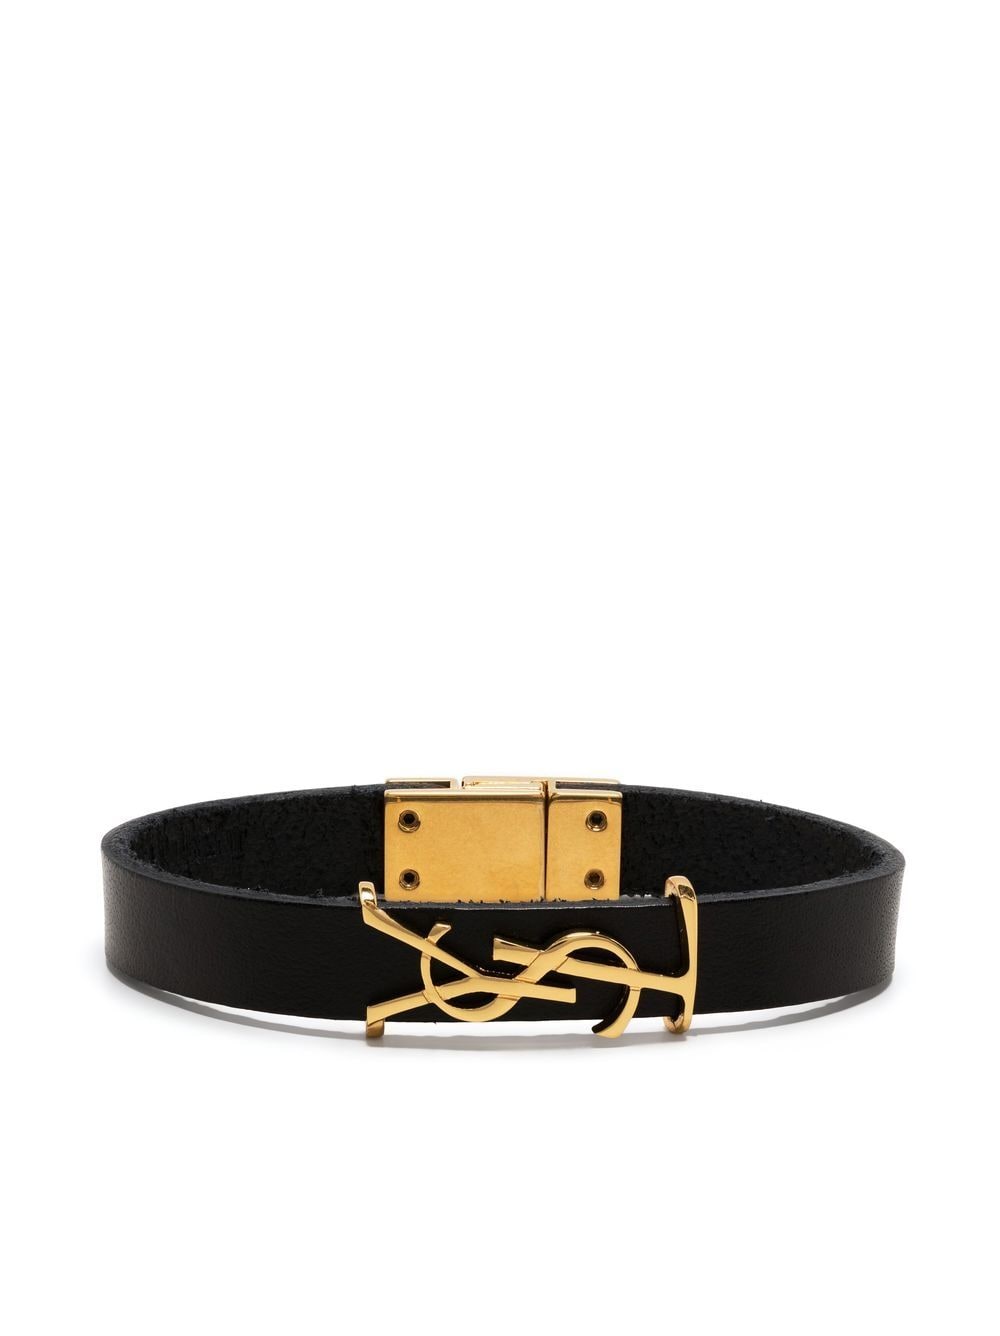 Saint Laurent YSL charm leather bracelet - Black von Saint Laurent